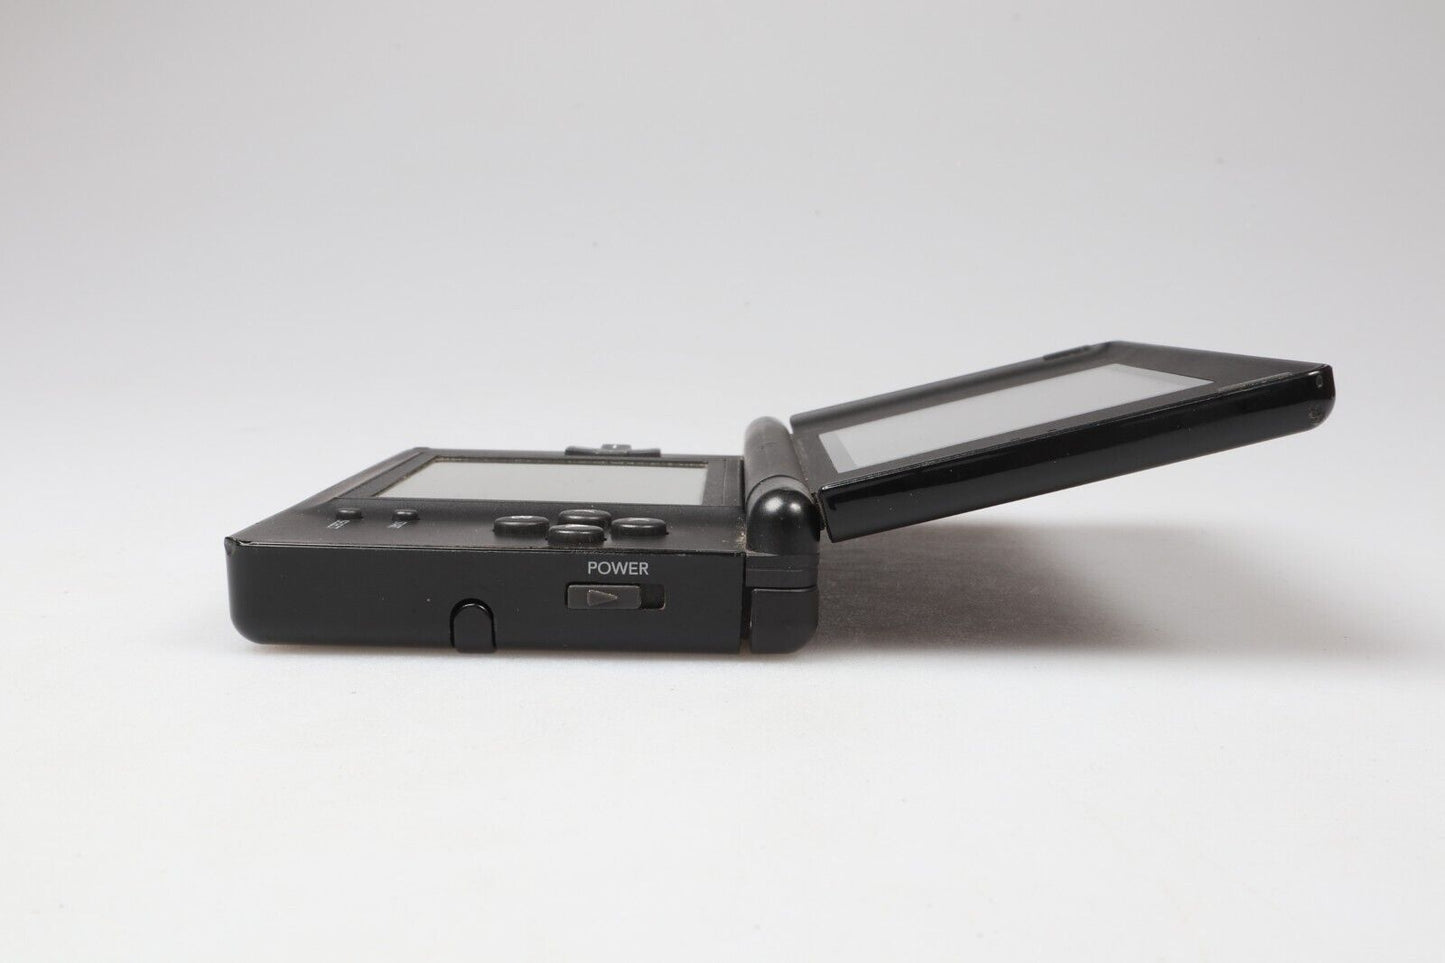 Nintendo DS Lite | USG-001 | Zwart | Handbediend 